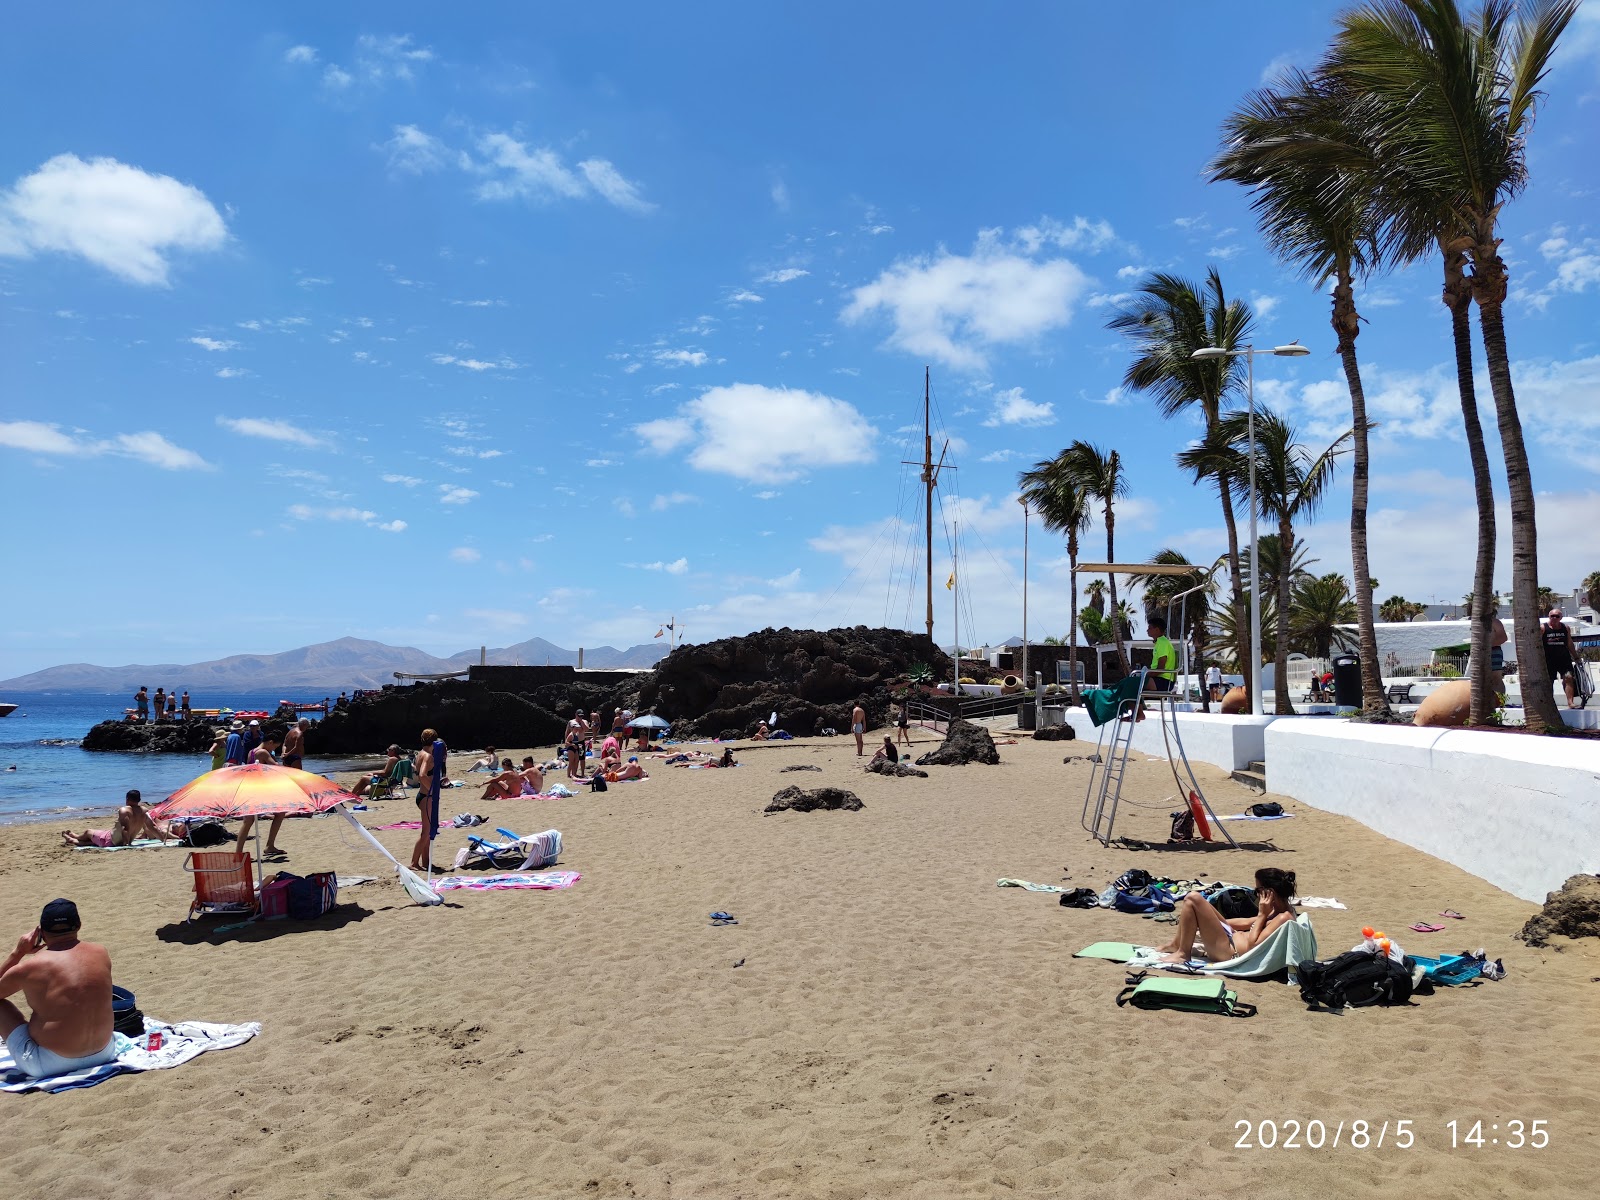 Playa Chica Plajı'in fotoğrafı doğrudan plaj ile birlikte